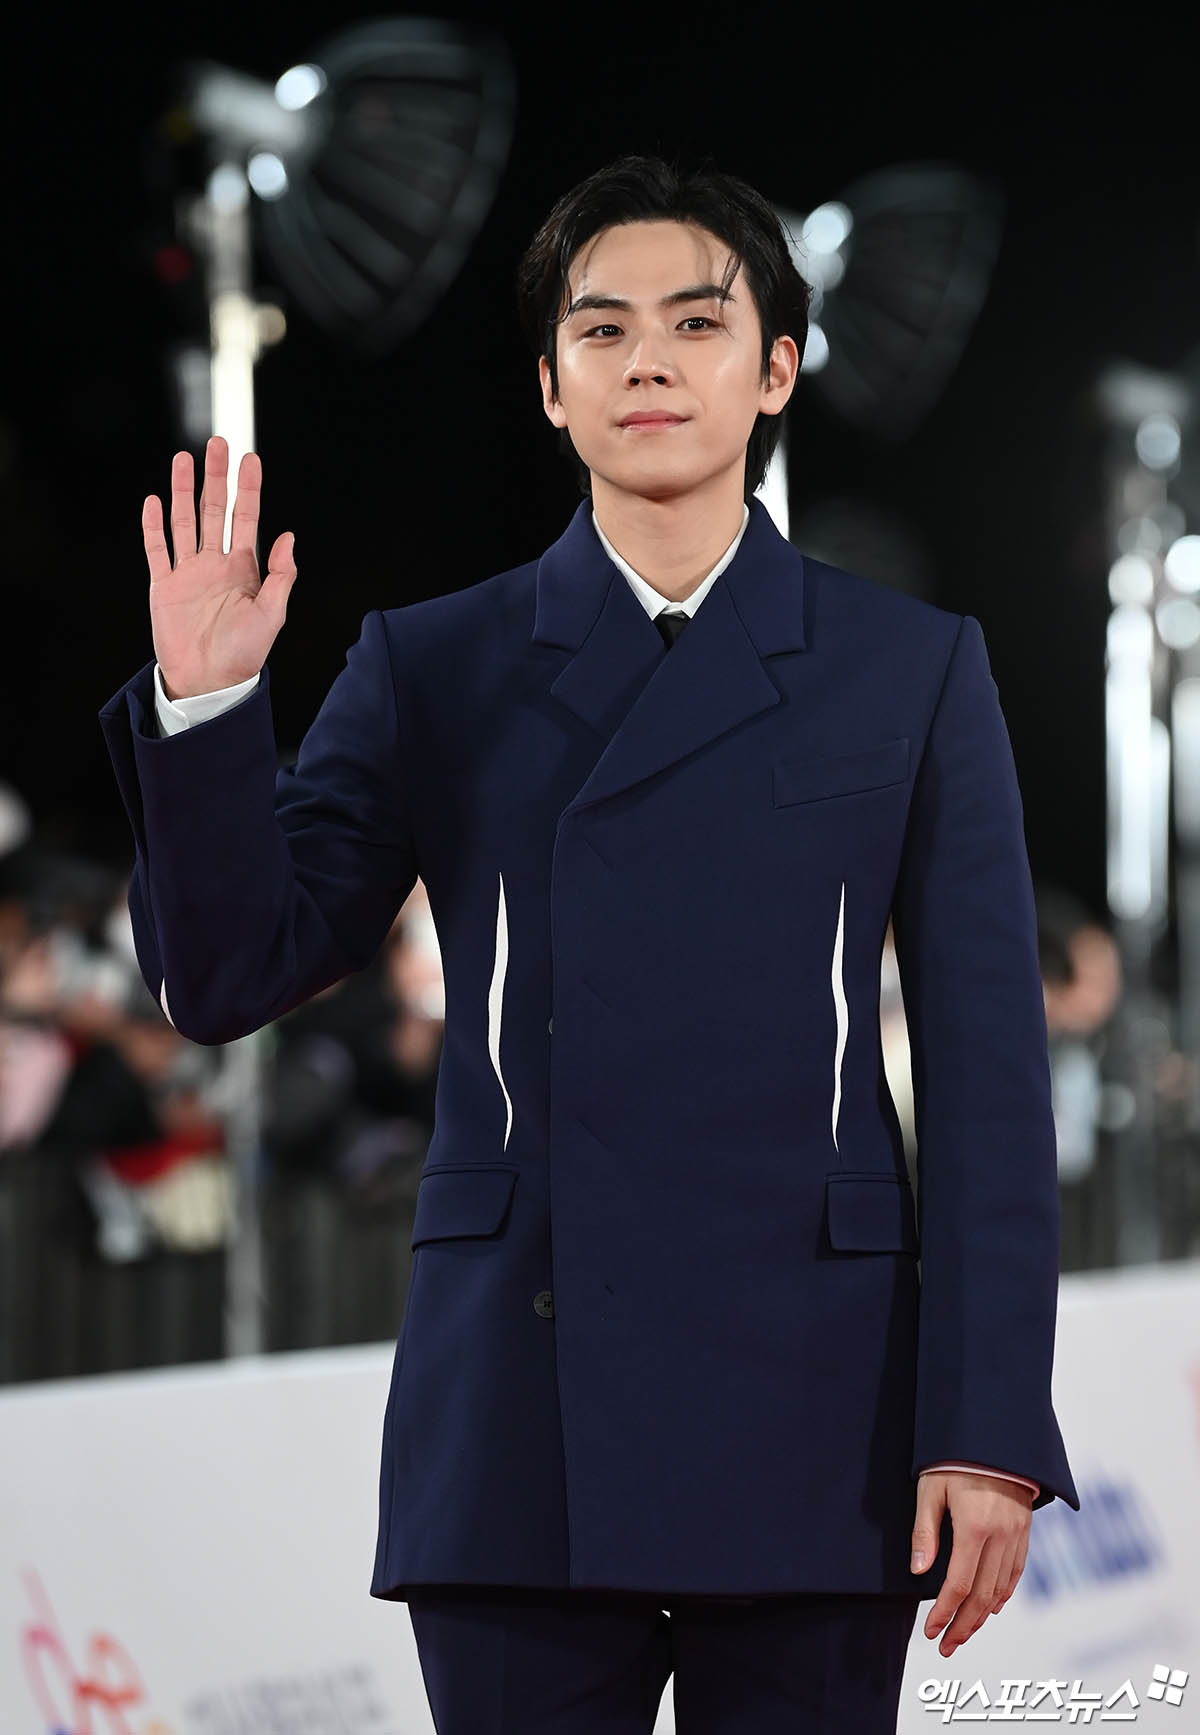 【PHOTO】俳優キム・ドフン、青龍映画賞で明るい挨拶